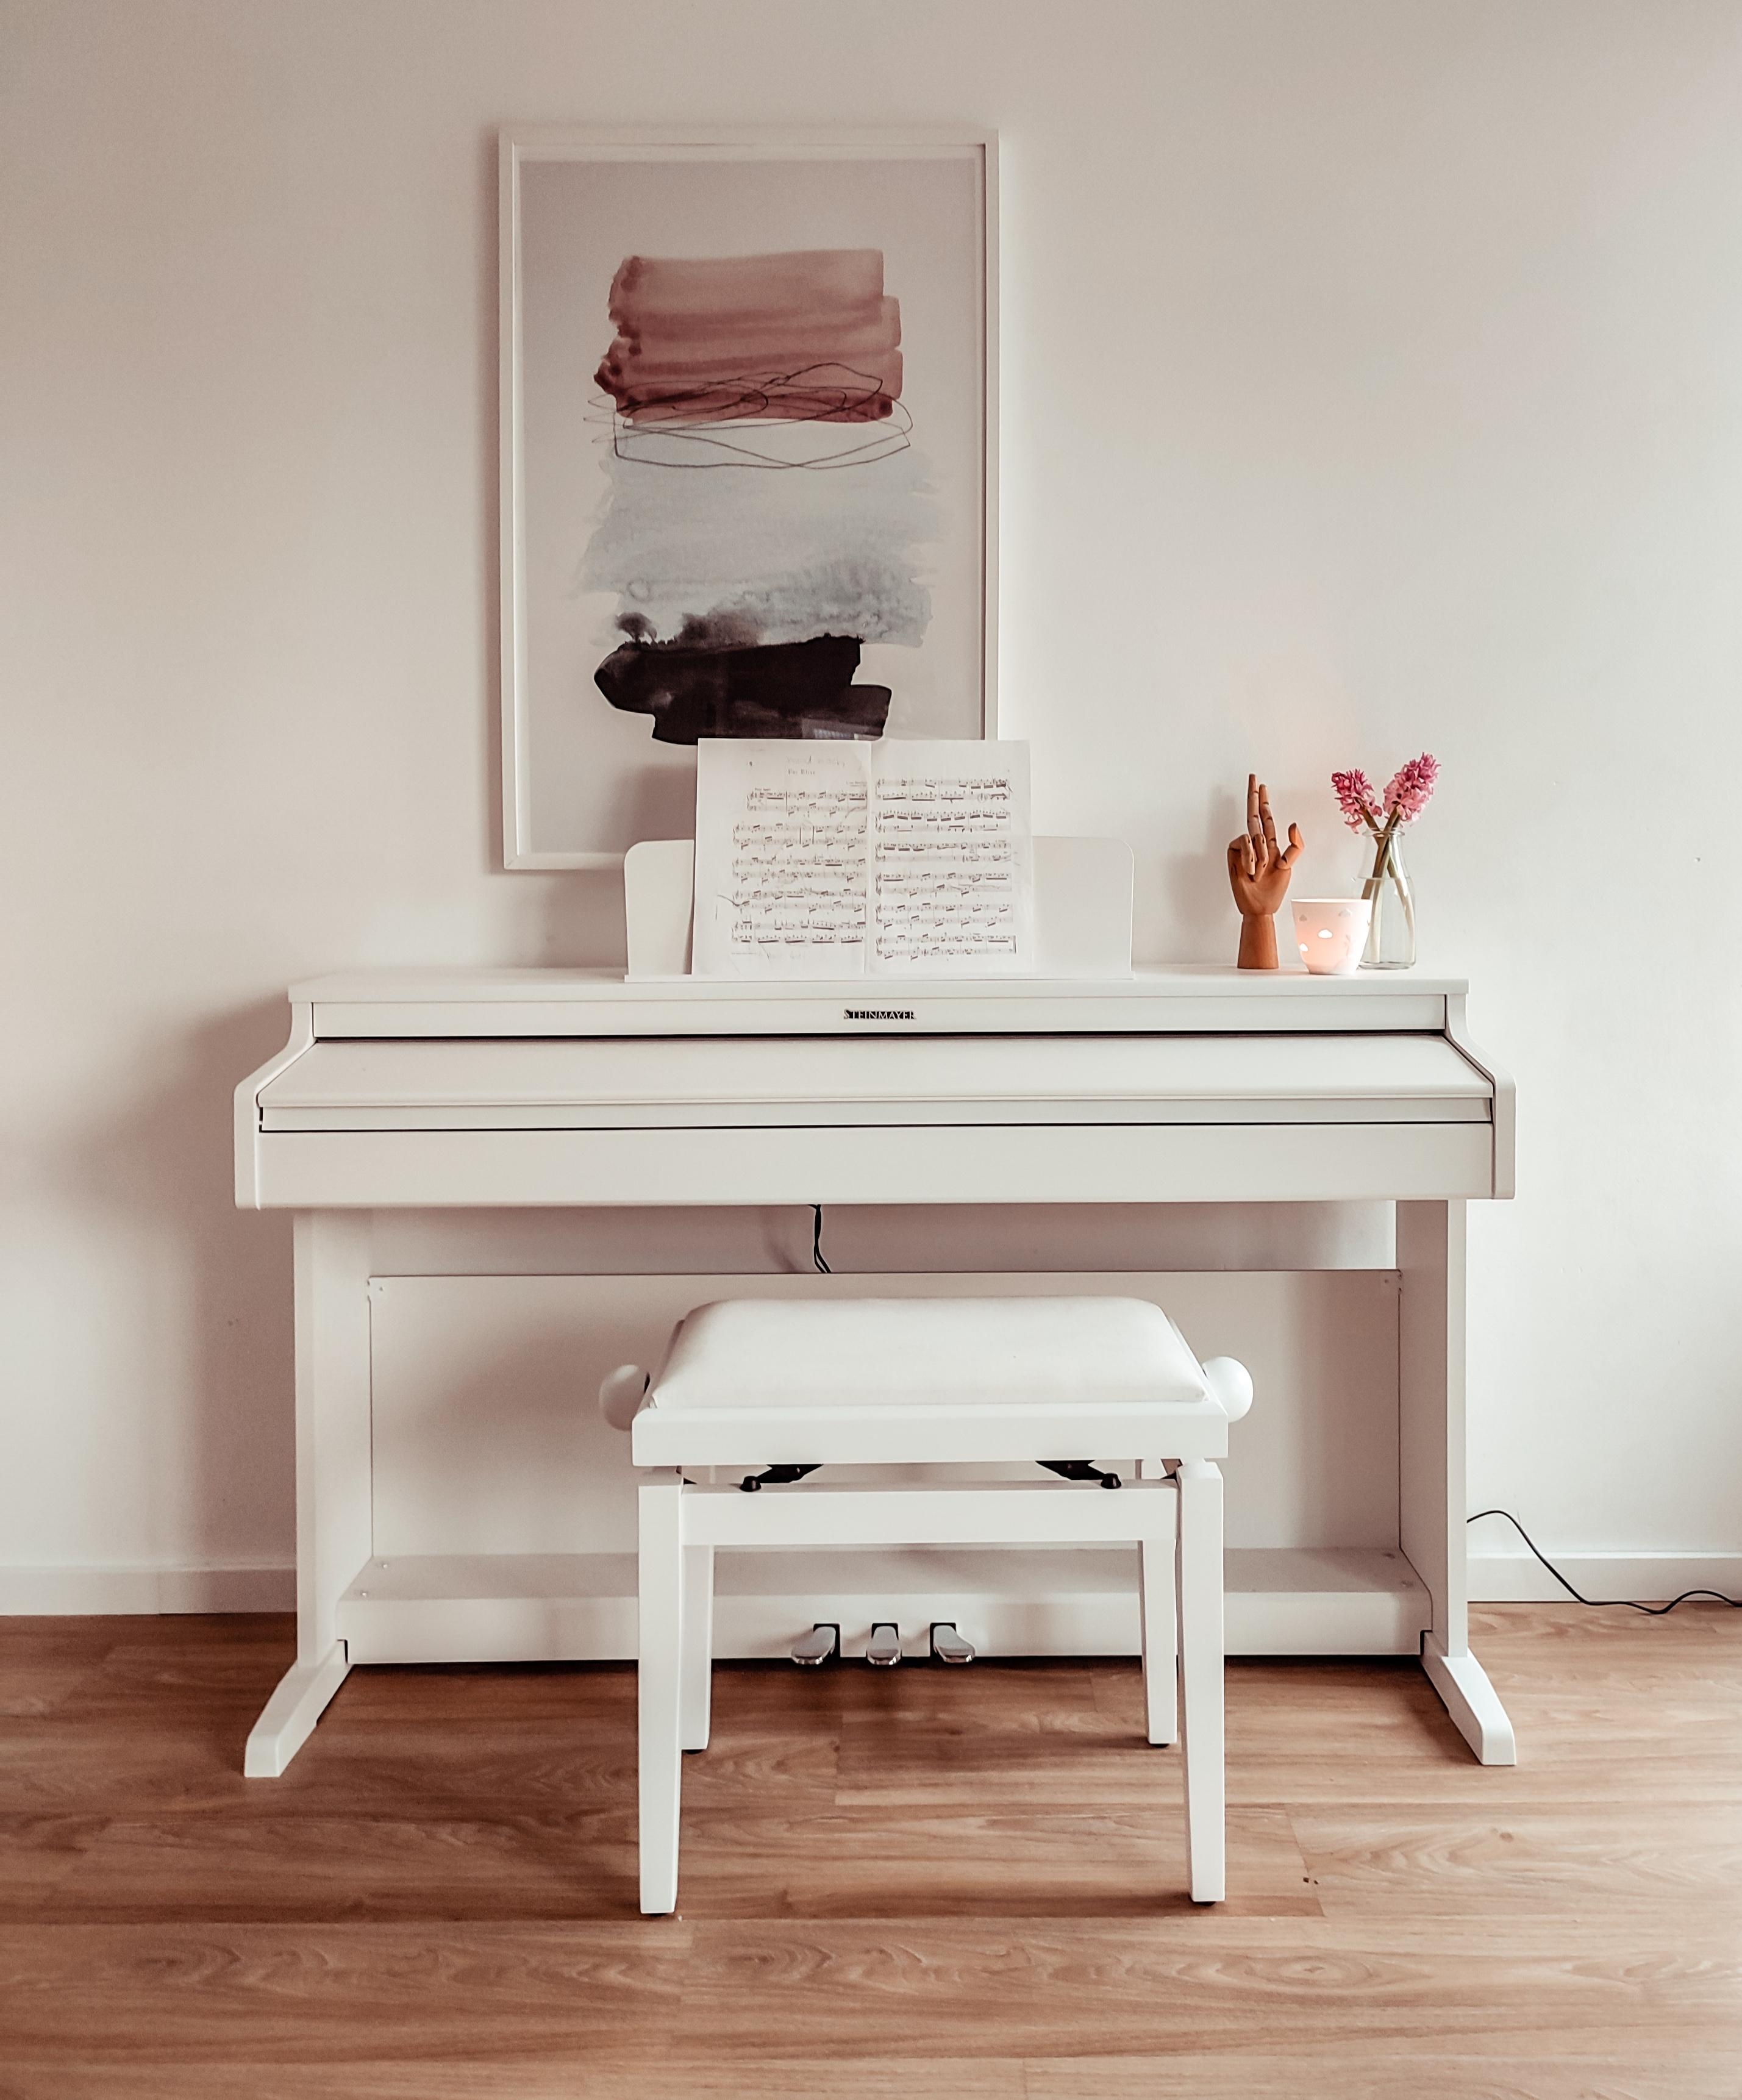 Klavierliebe

#klavier #wohnzimmer #Bilderrahmen #holz 